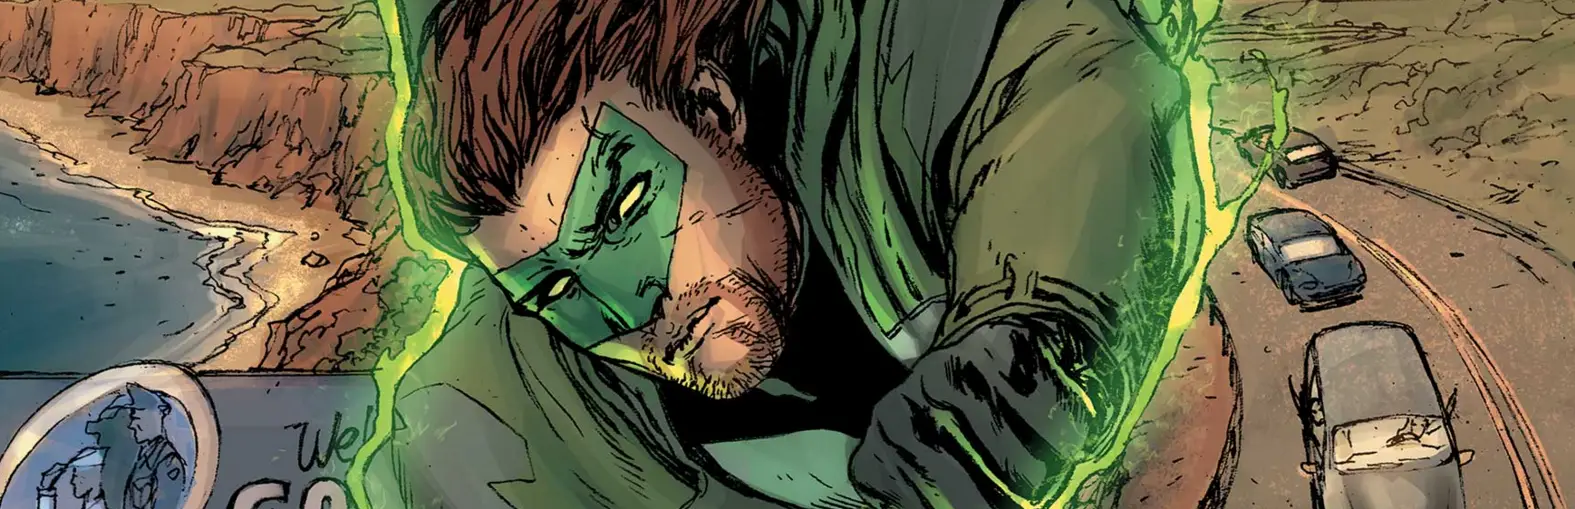 Green Lantern #47 Review